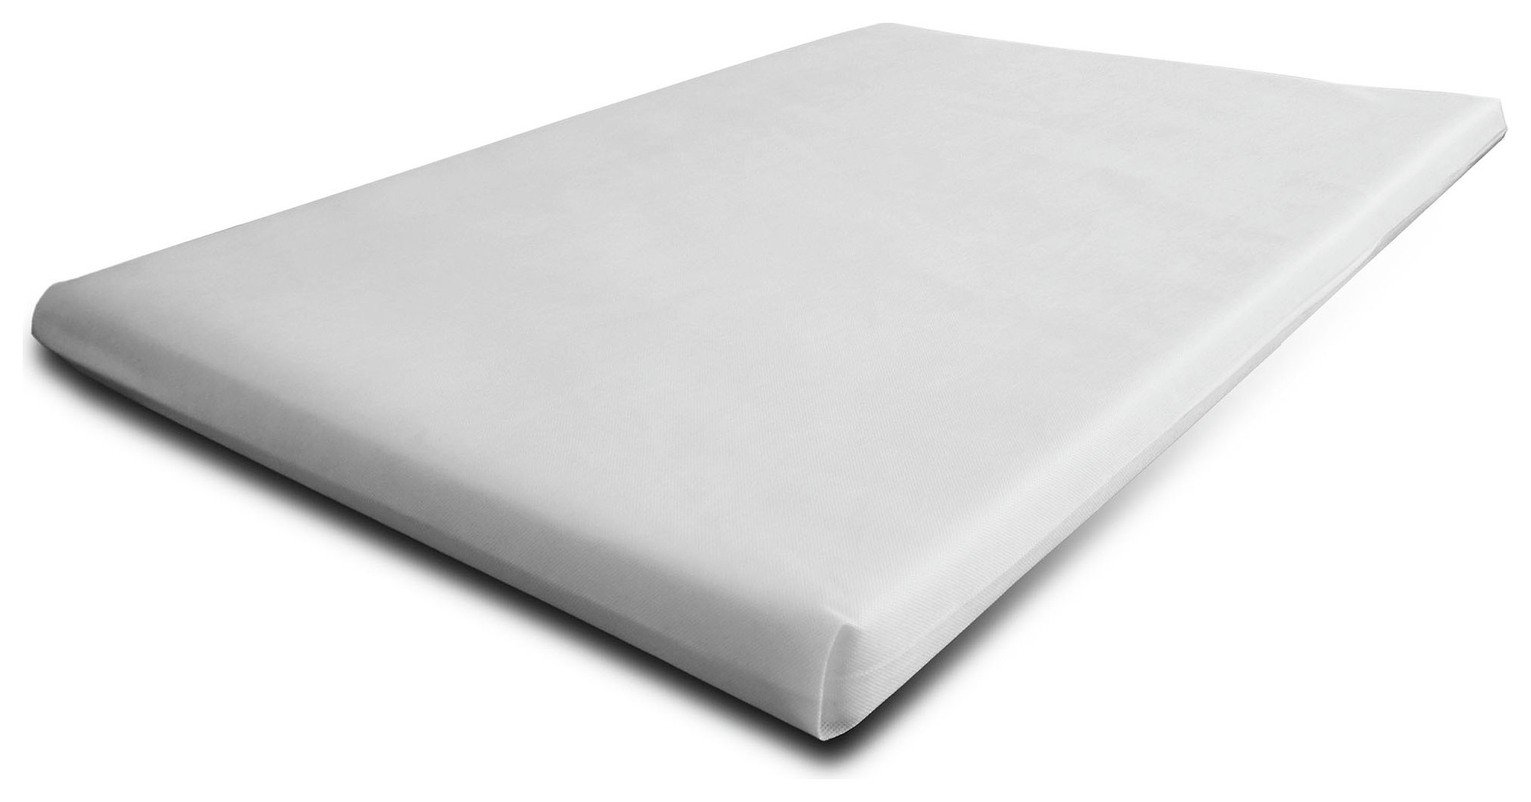 cuggl travel cot mattress